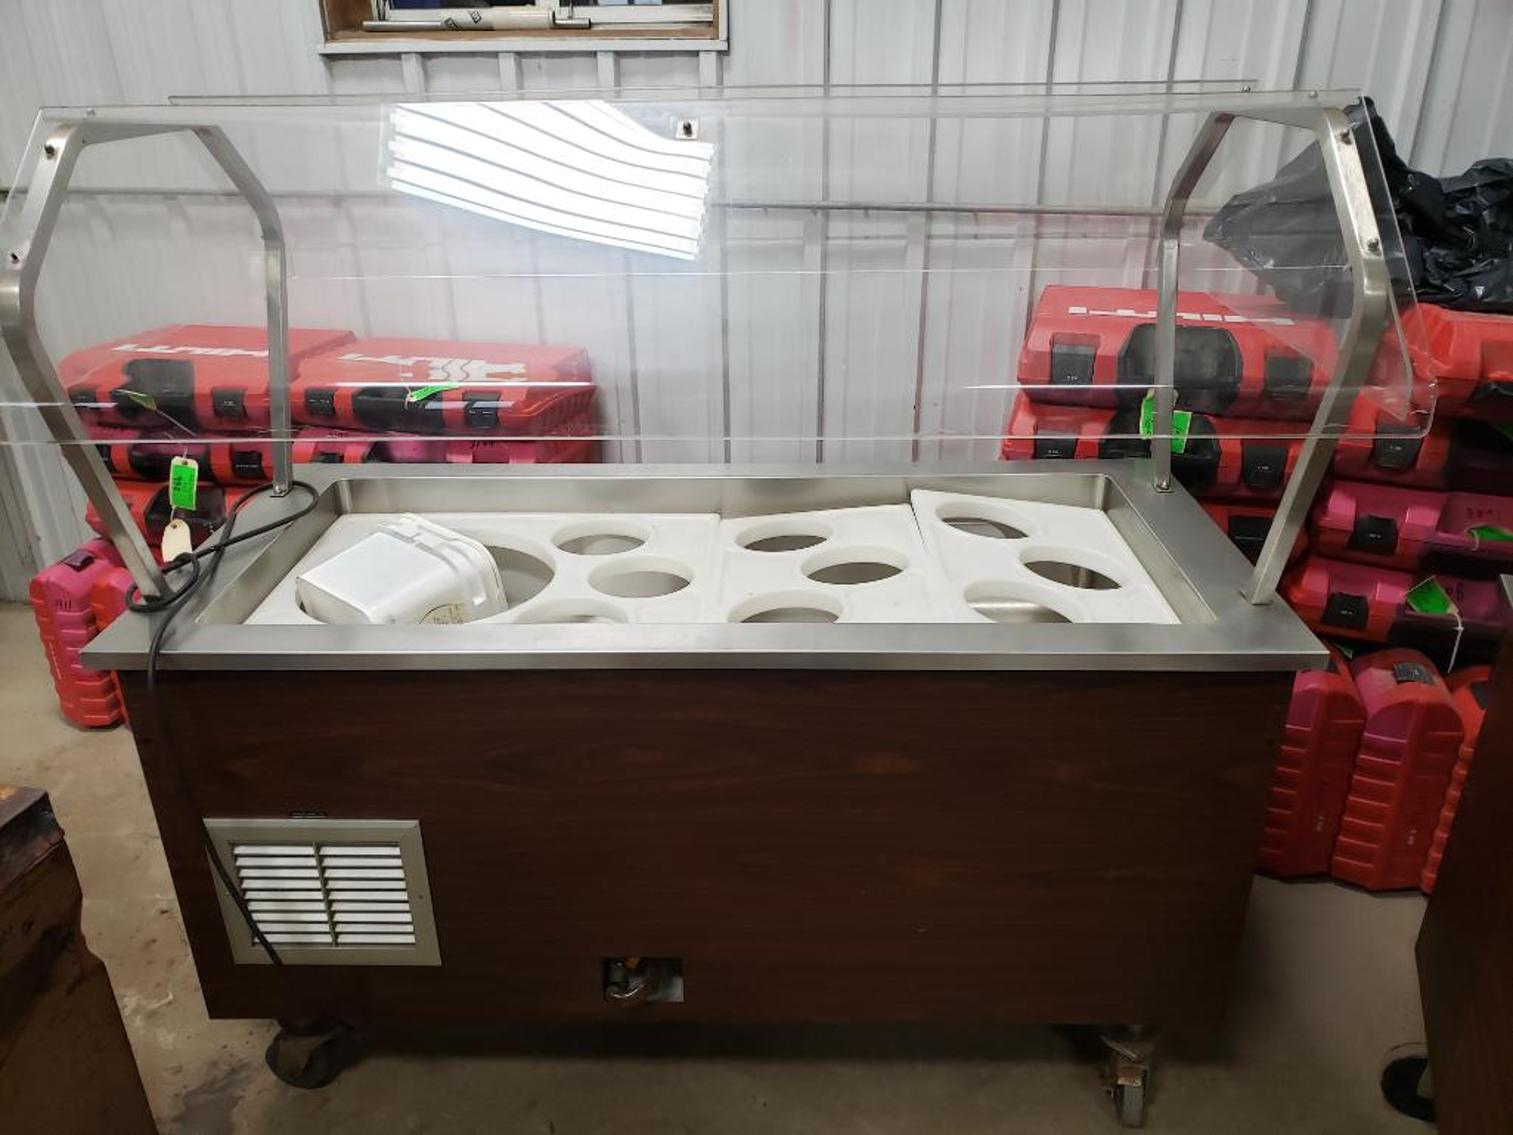 Stoelting Soft Serve Ice Cream Machine,(2) 2014 Monitowoc Countertop Ice Machines, (2) Buffet Carts - POSTPONED!